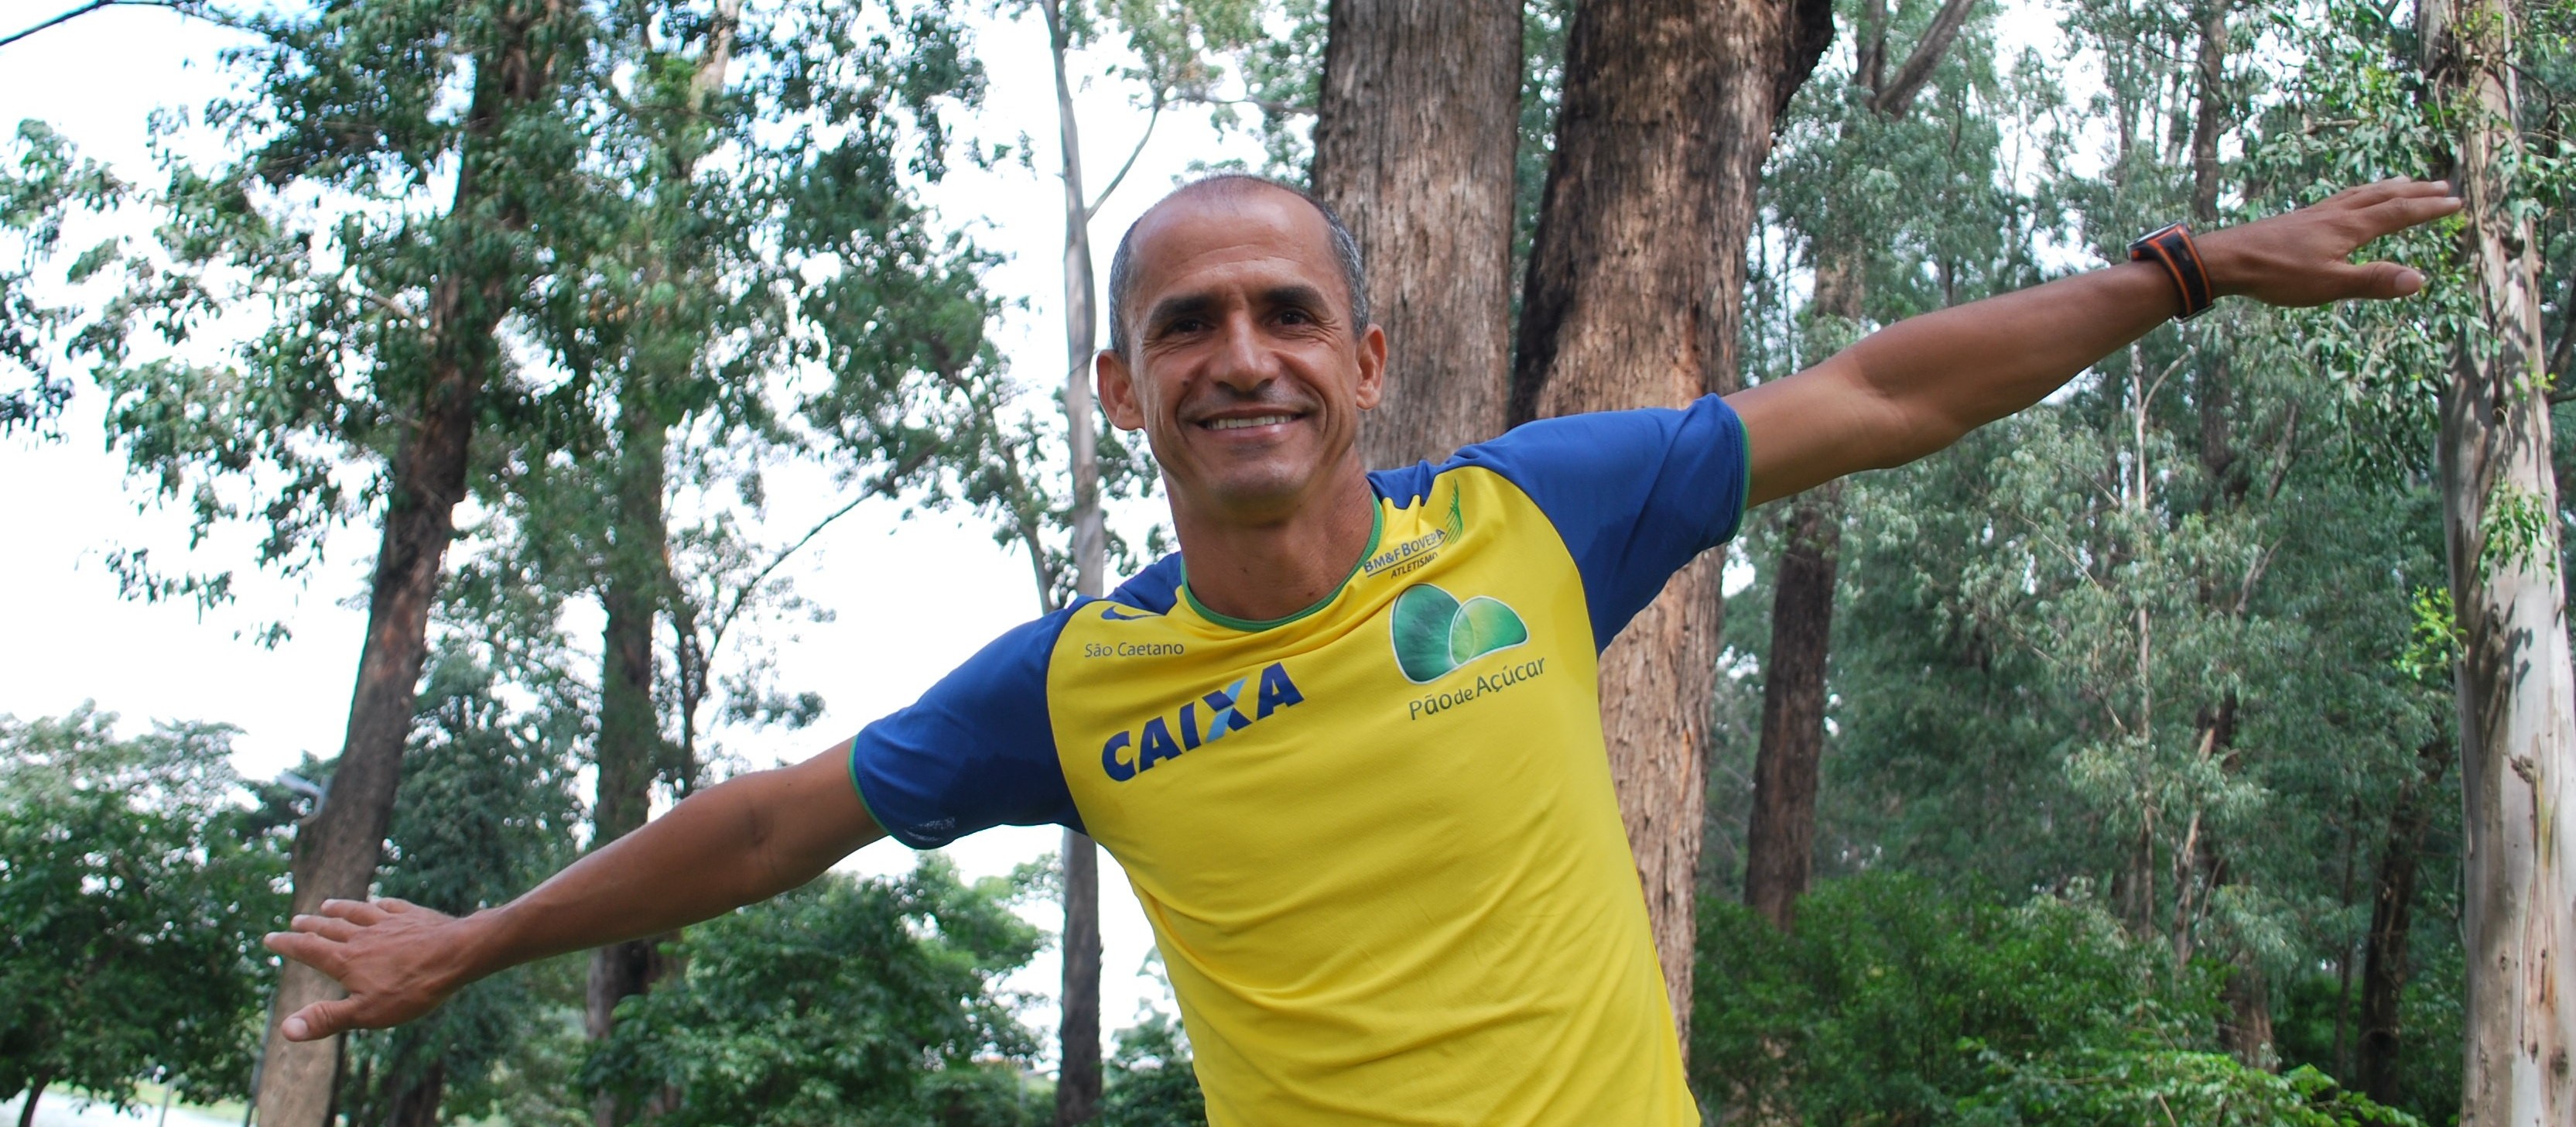 Ex-maratonista Vanderlei Cordeiro de Lima vai liderar caminhada no Parque do Ingá